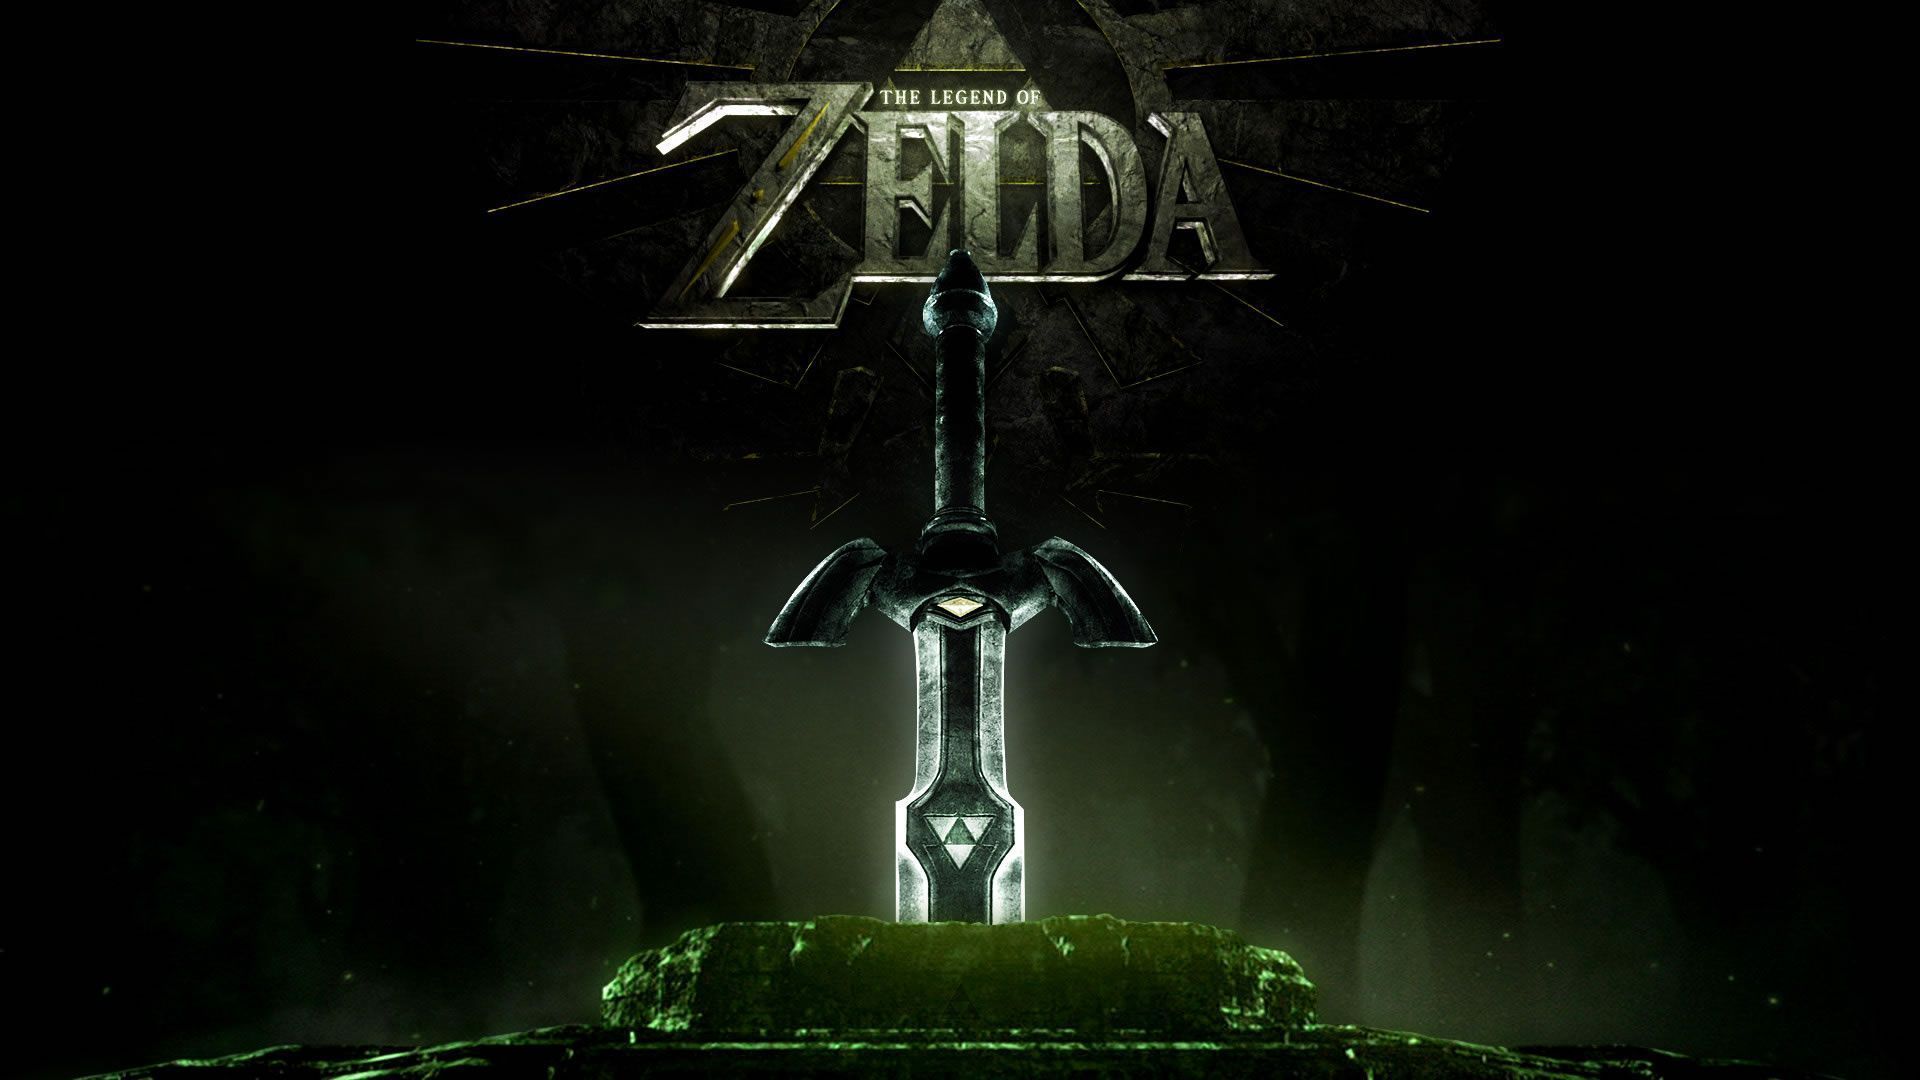 The Legend of Zelda Wallpapers | HD Wallpapers